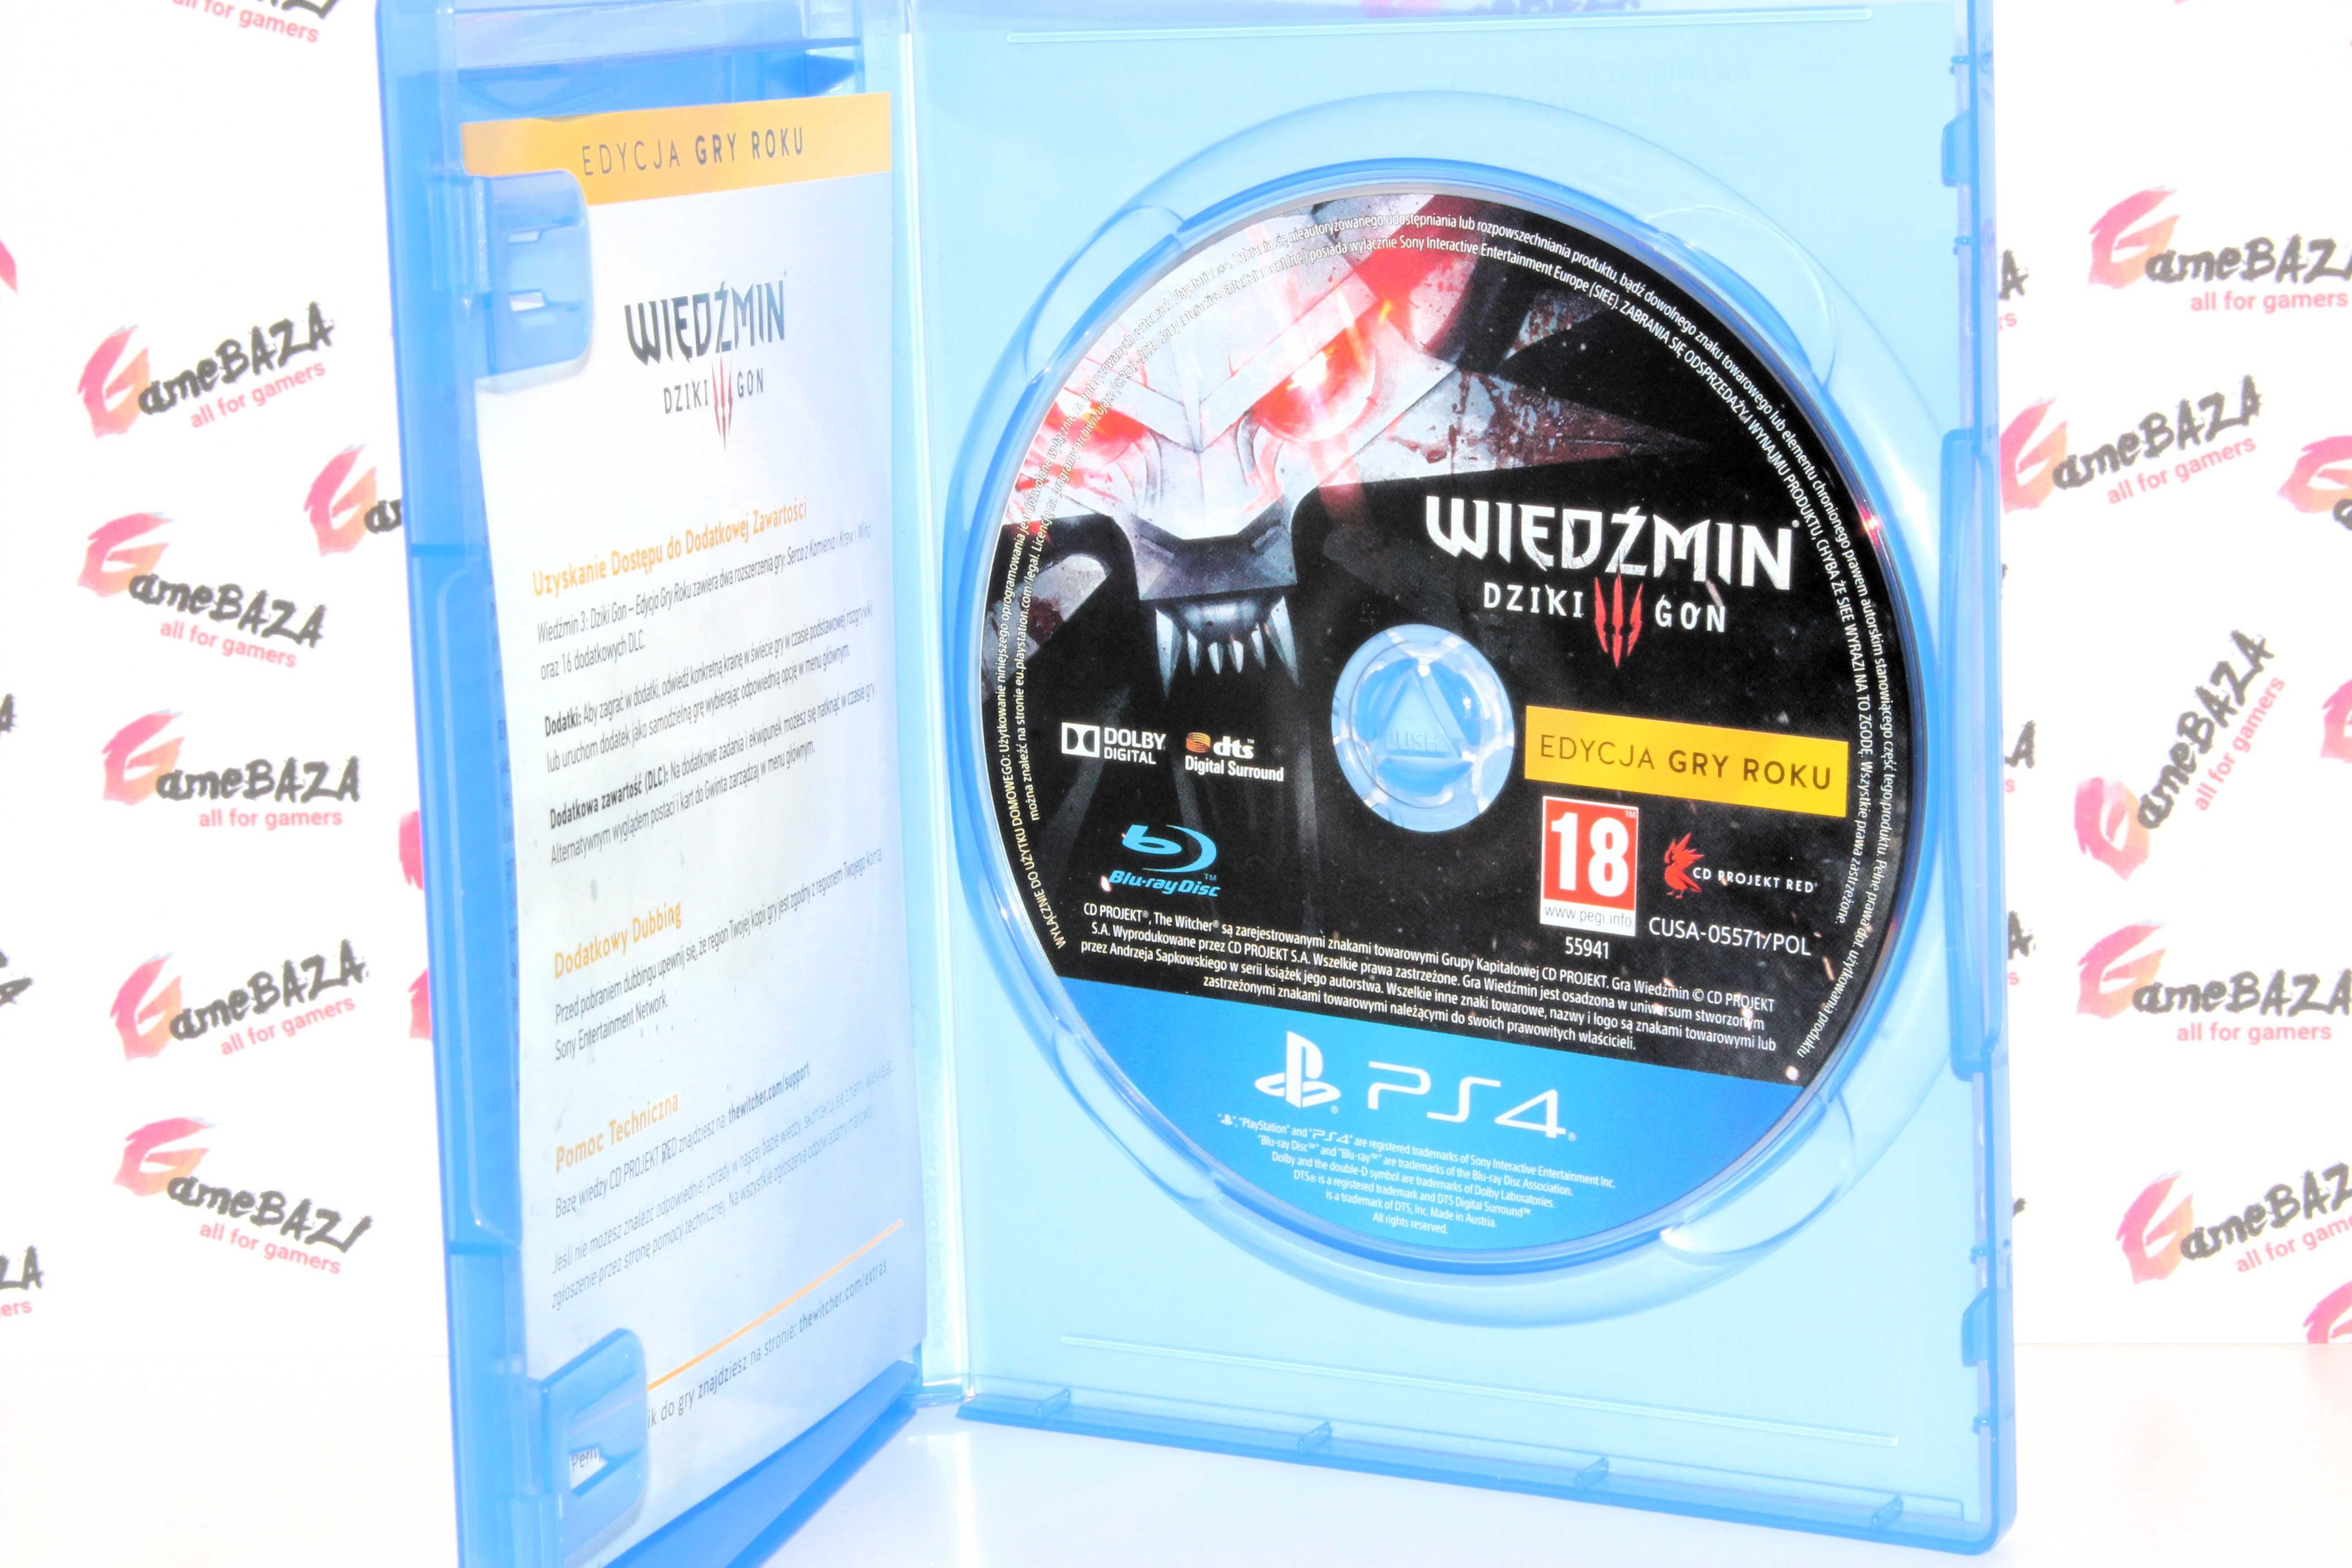 PL Wiedźmin 3 Dziki Gon Edycja Gry Roku PS4 GameBAZA